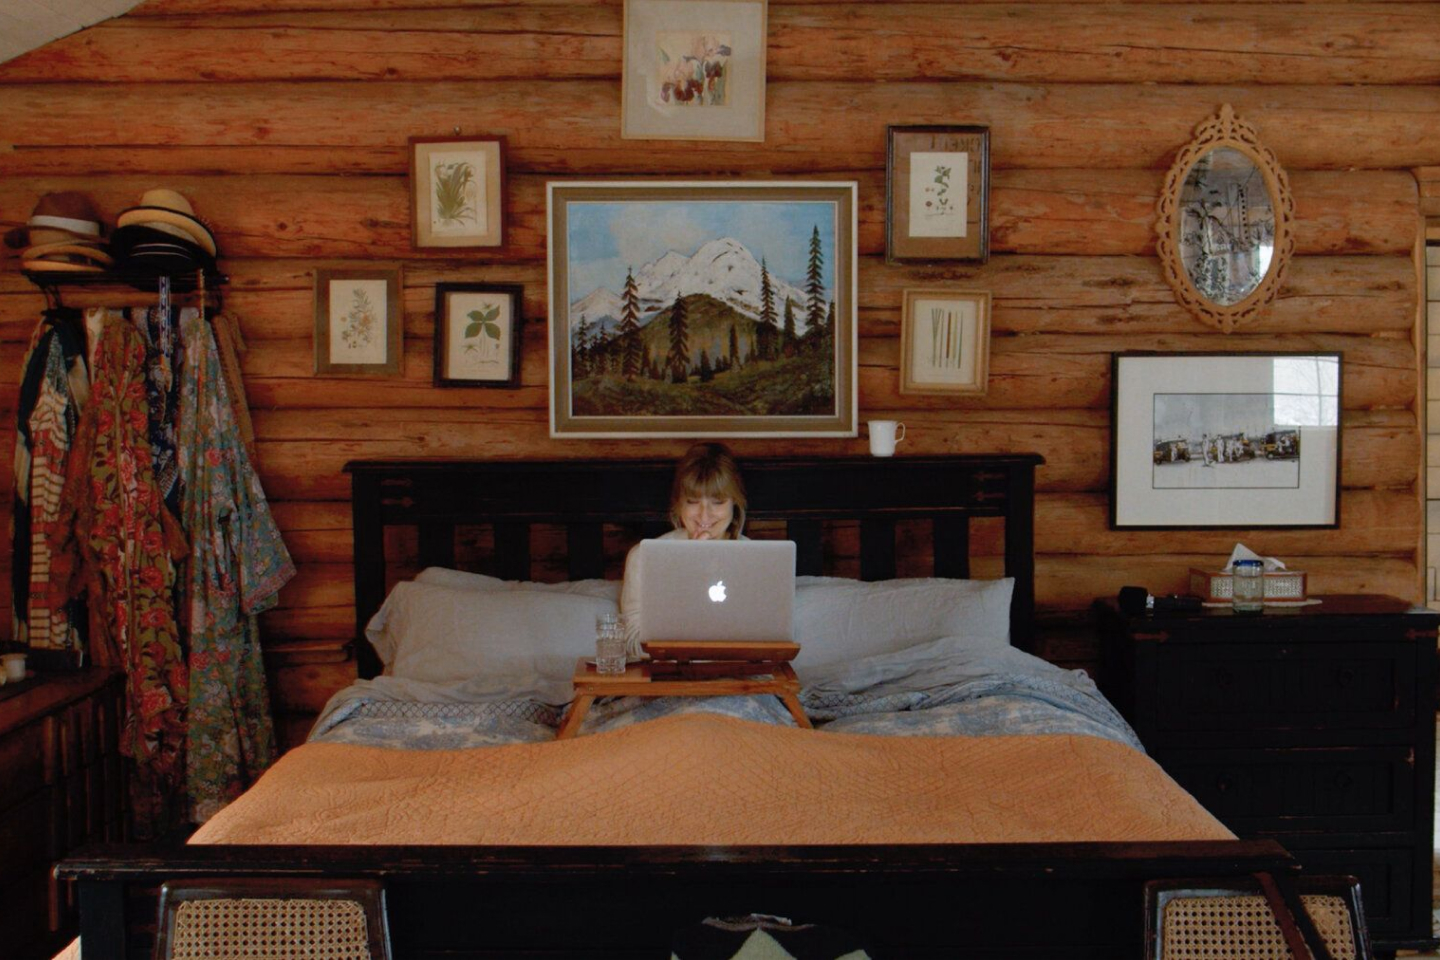 Uma pessoa trabalhando em um MacBook sentada na cama em um quarto com painéis de madeira.